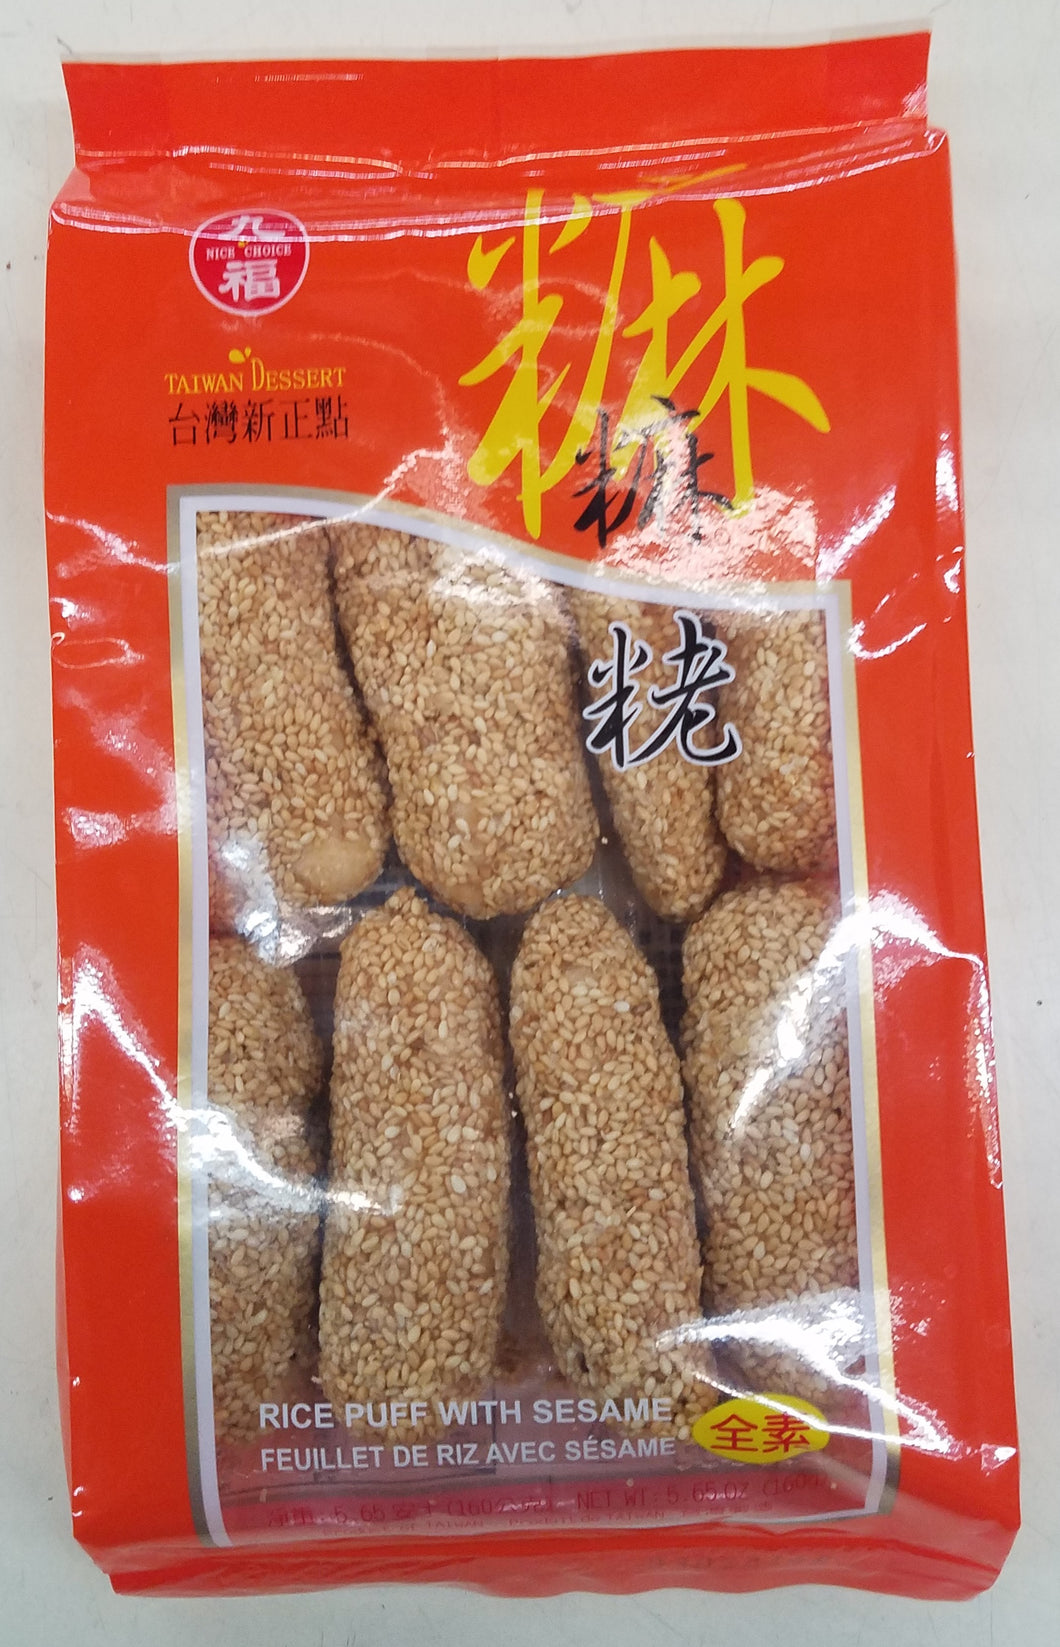 Nice Choice Rice Puff with Sesame